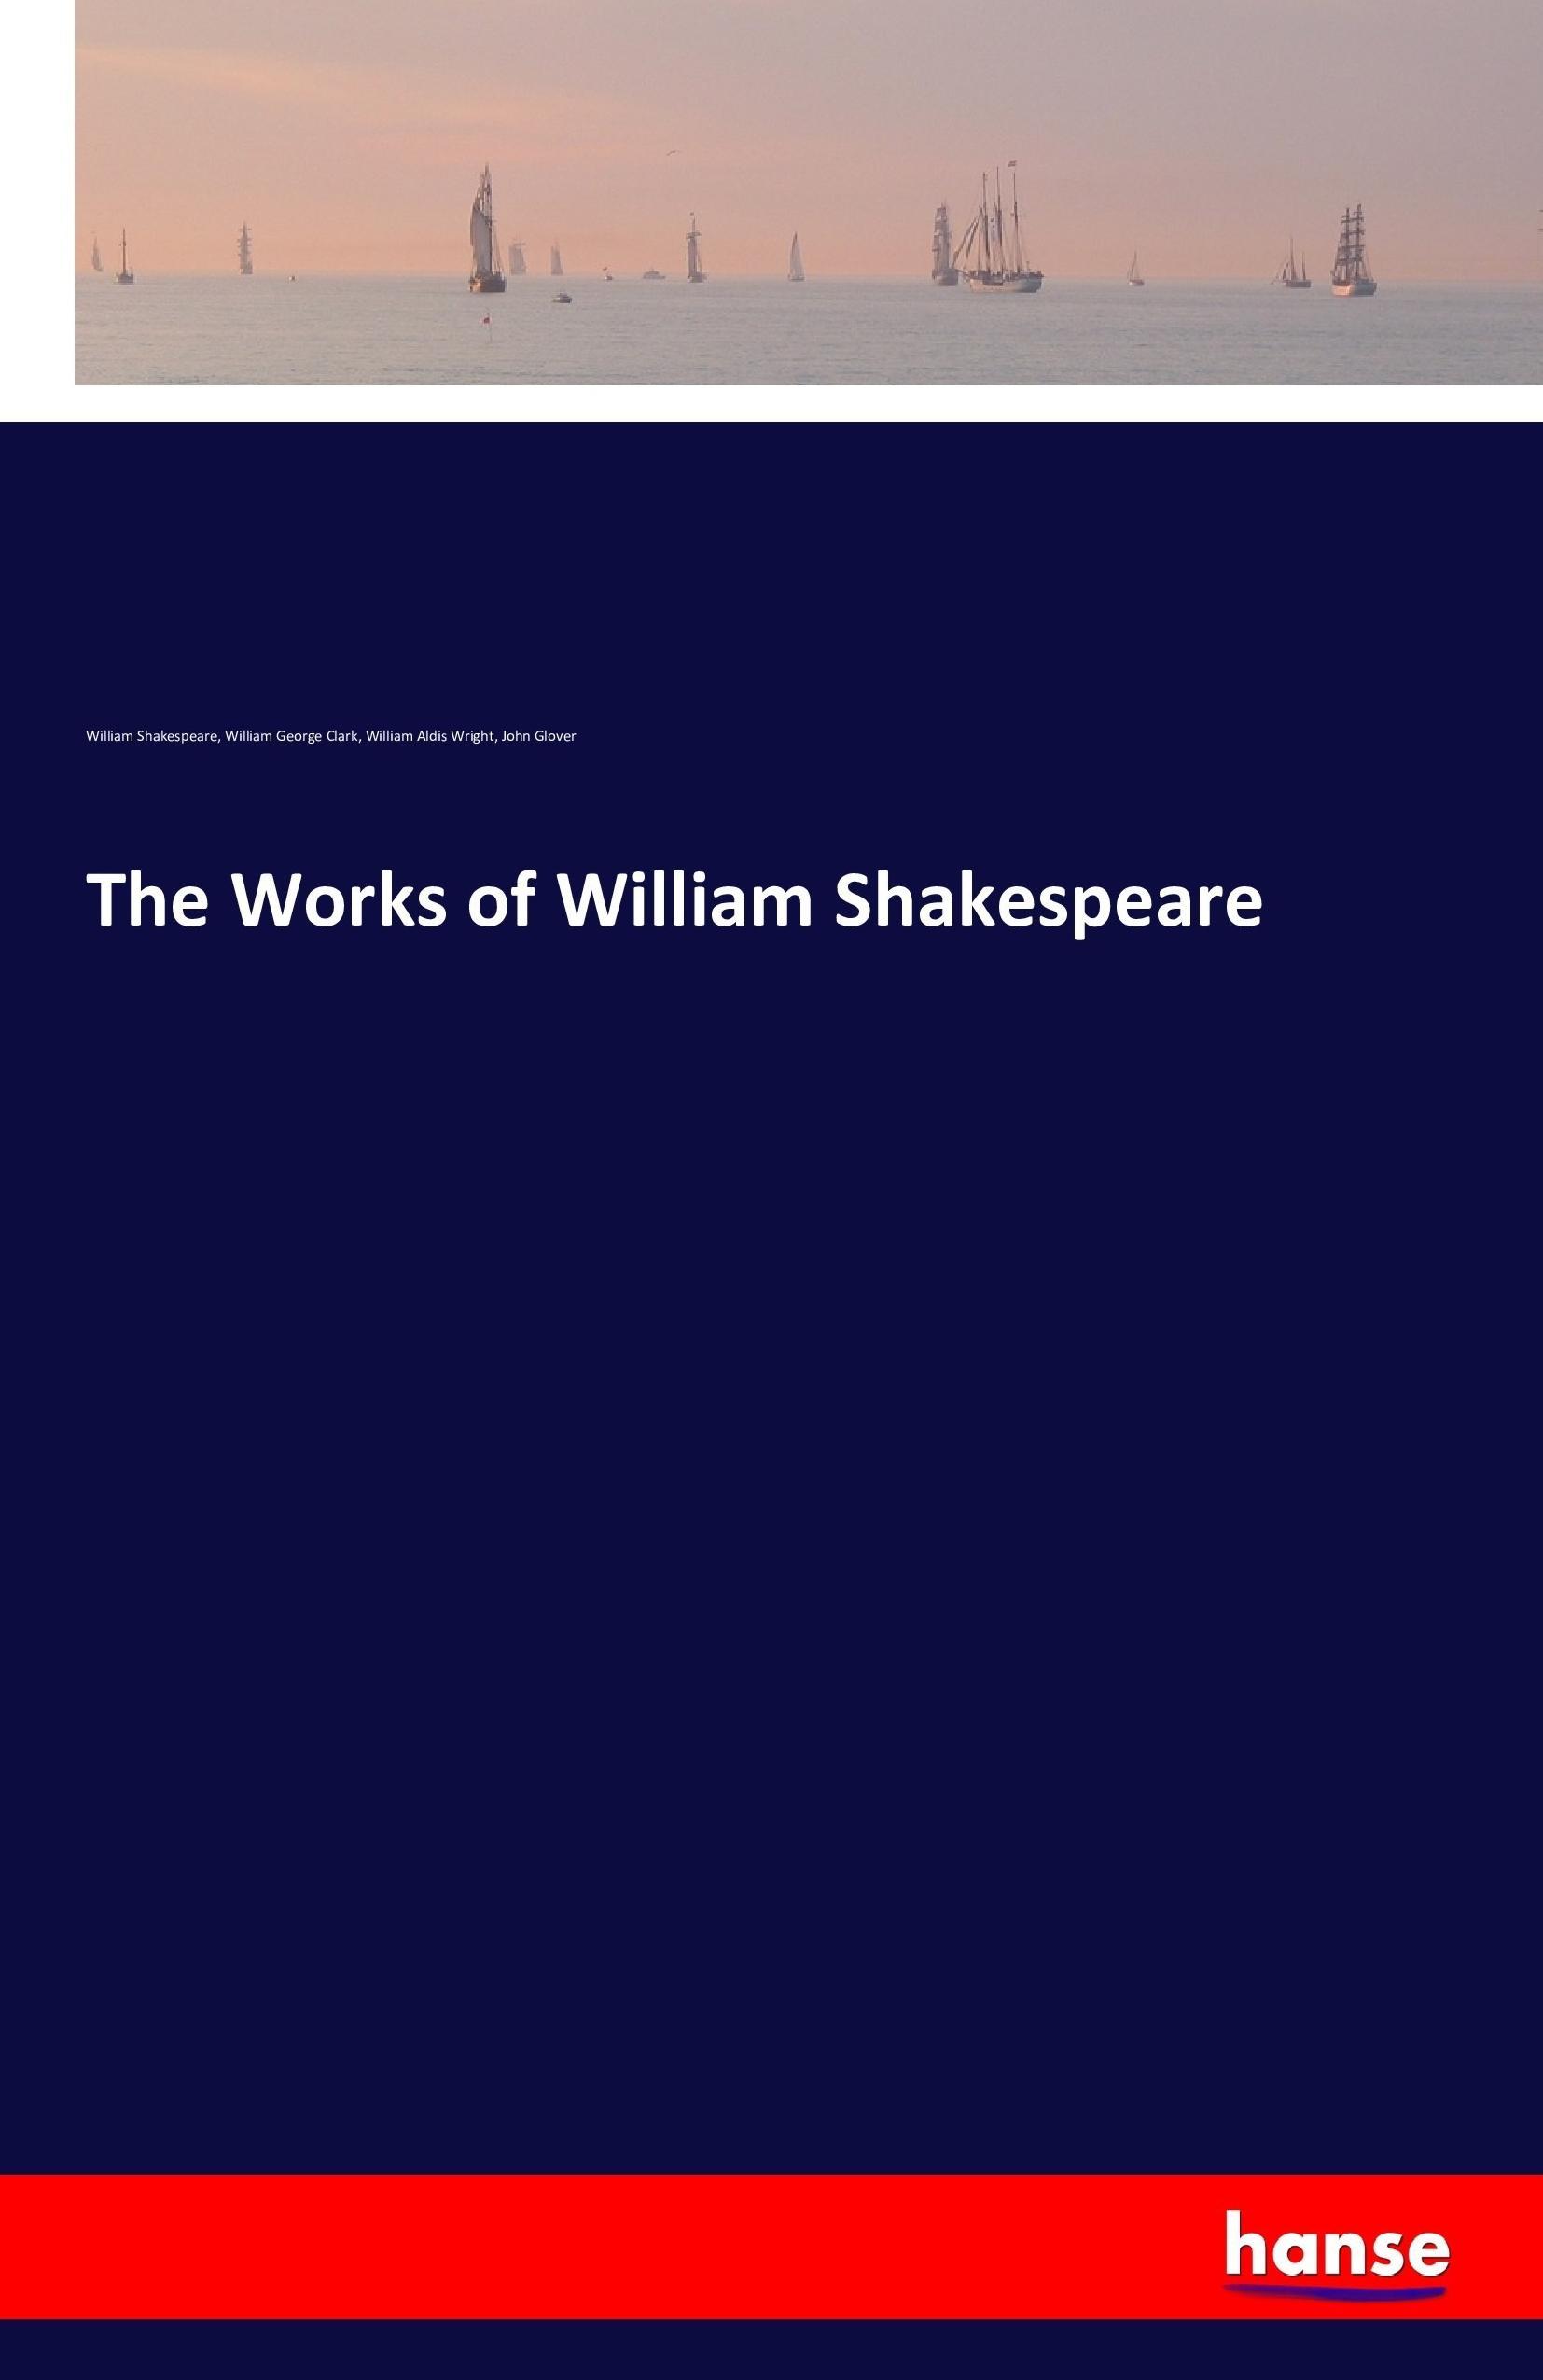 The Works of William Shakespeare - Shakespeare, William Clark, William George Wright, William Aldis Glover, John